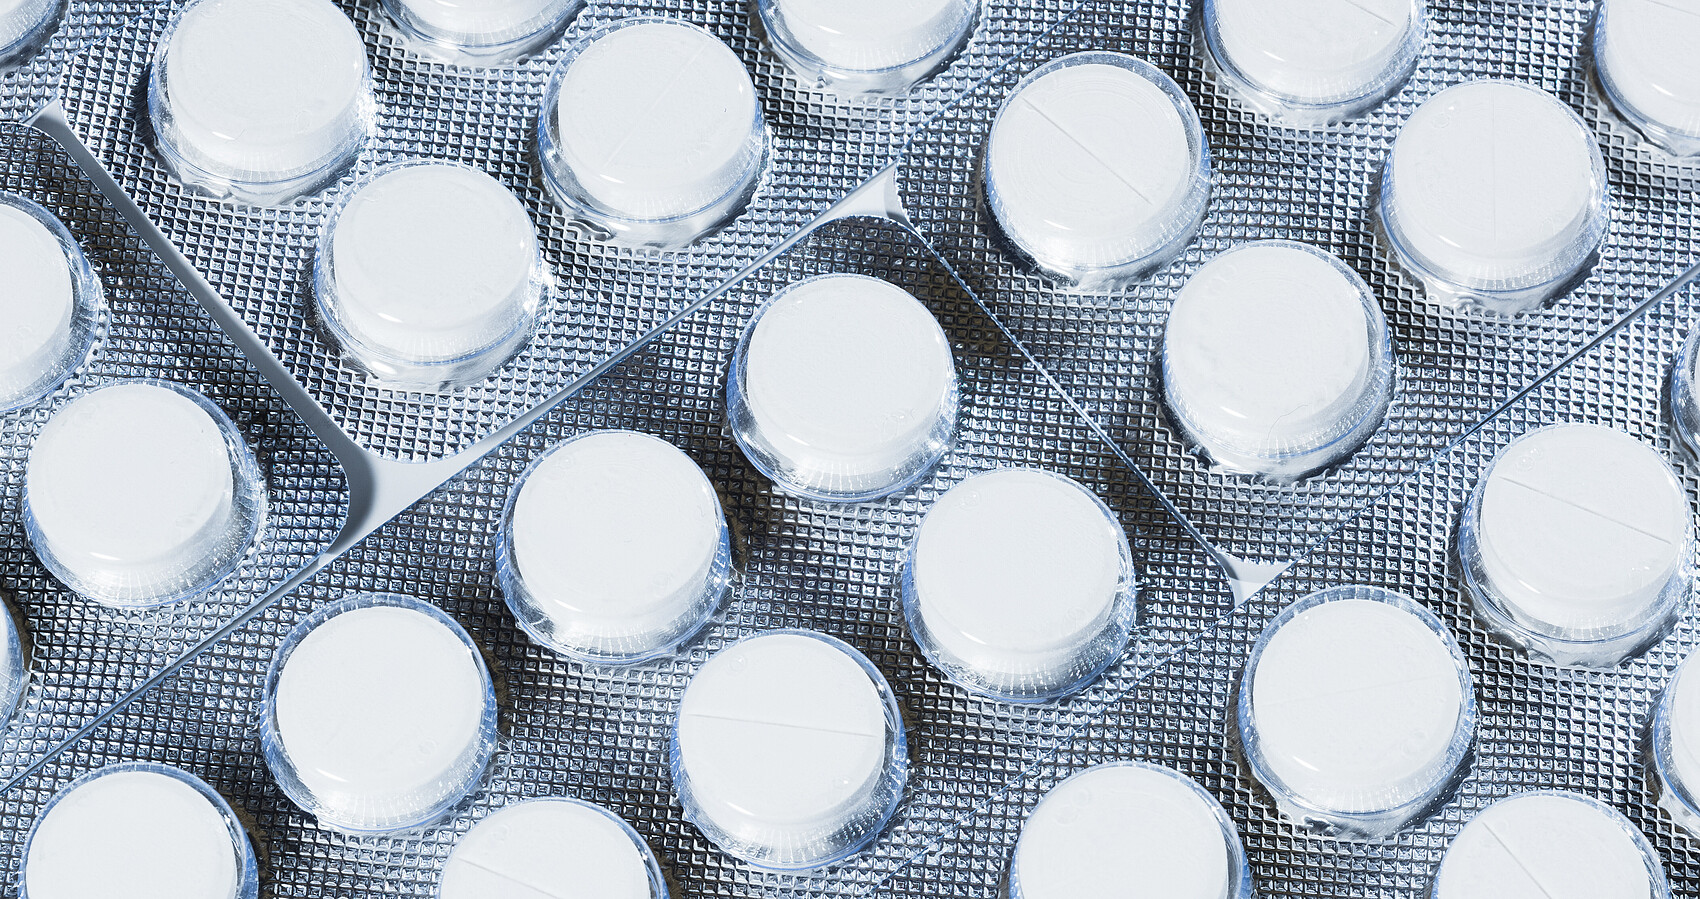 Das Bild zeigt weiße Tabletten in einer Sichtverpackung mit silbernem Hintergrund